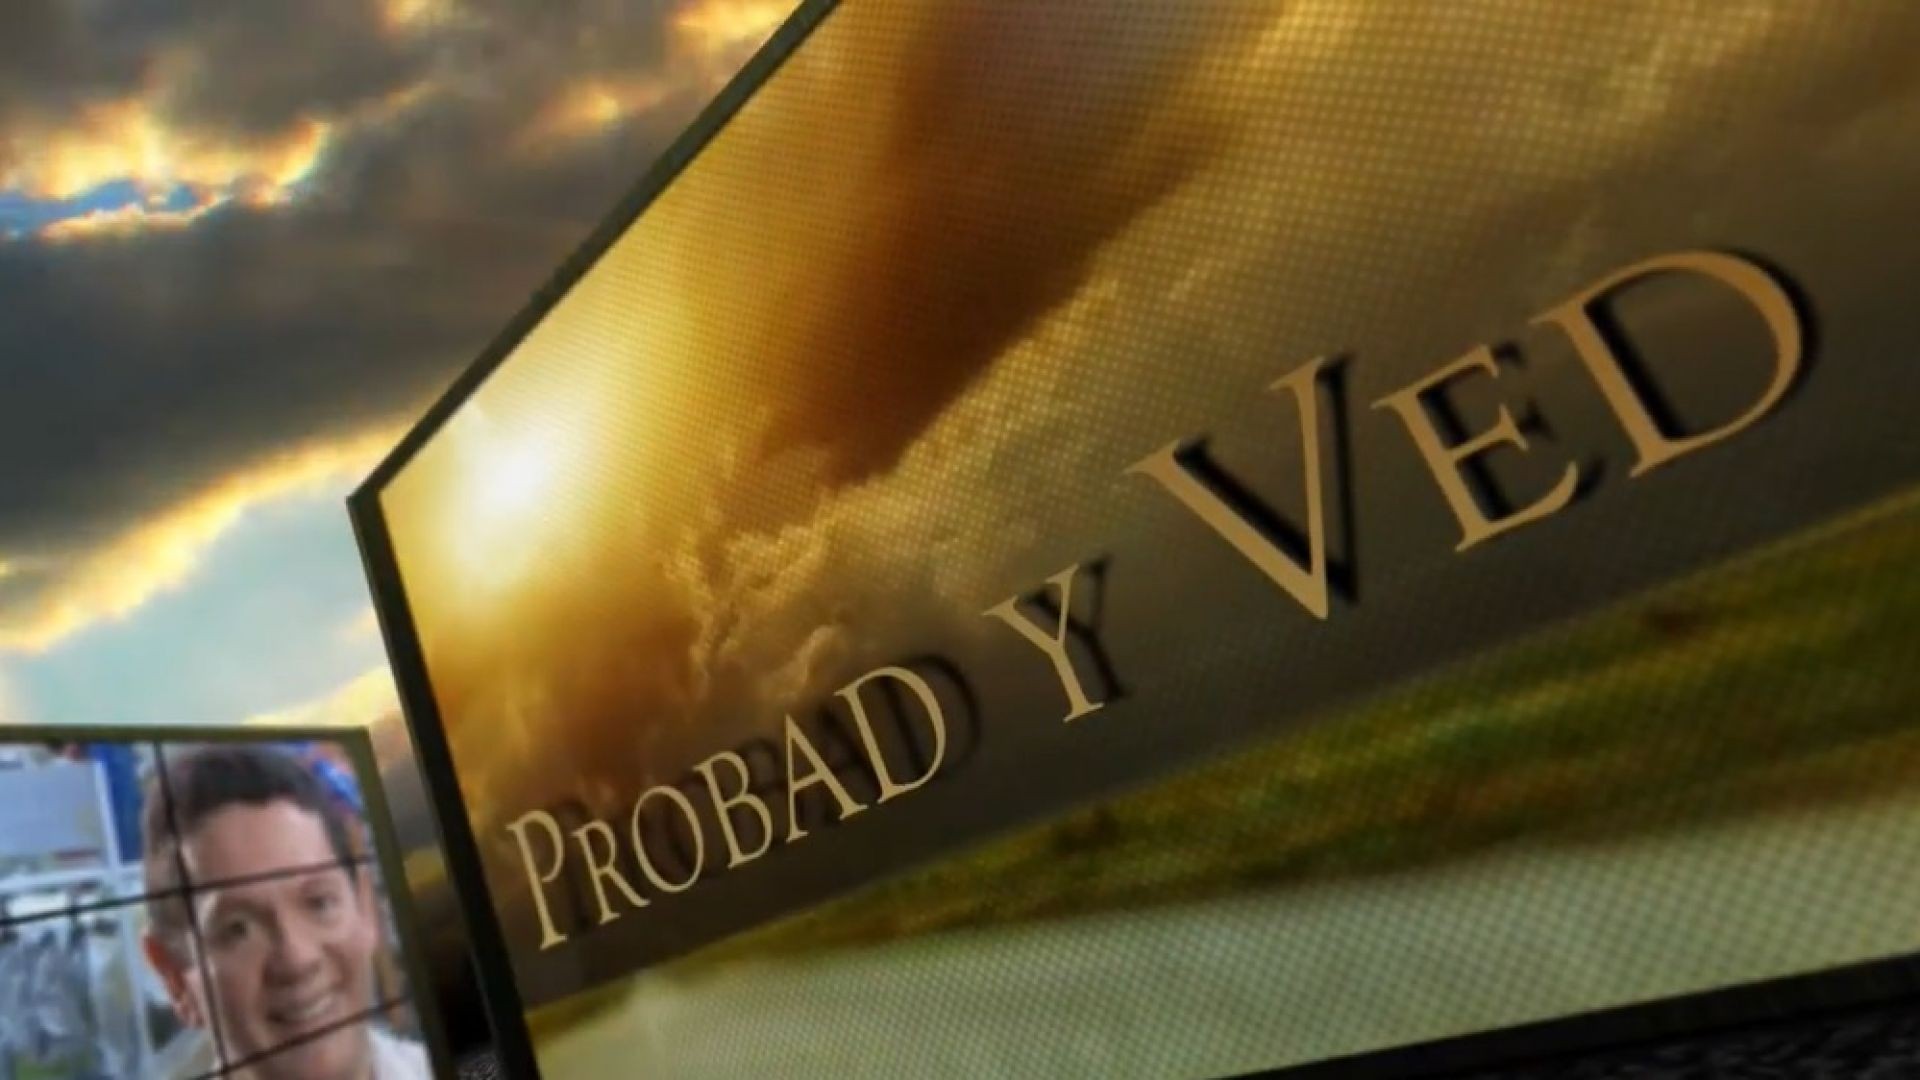 ⁣Probad y Ved 2013 - Fidelidad anticipada - 03/Ago